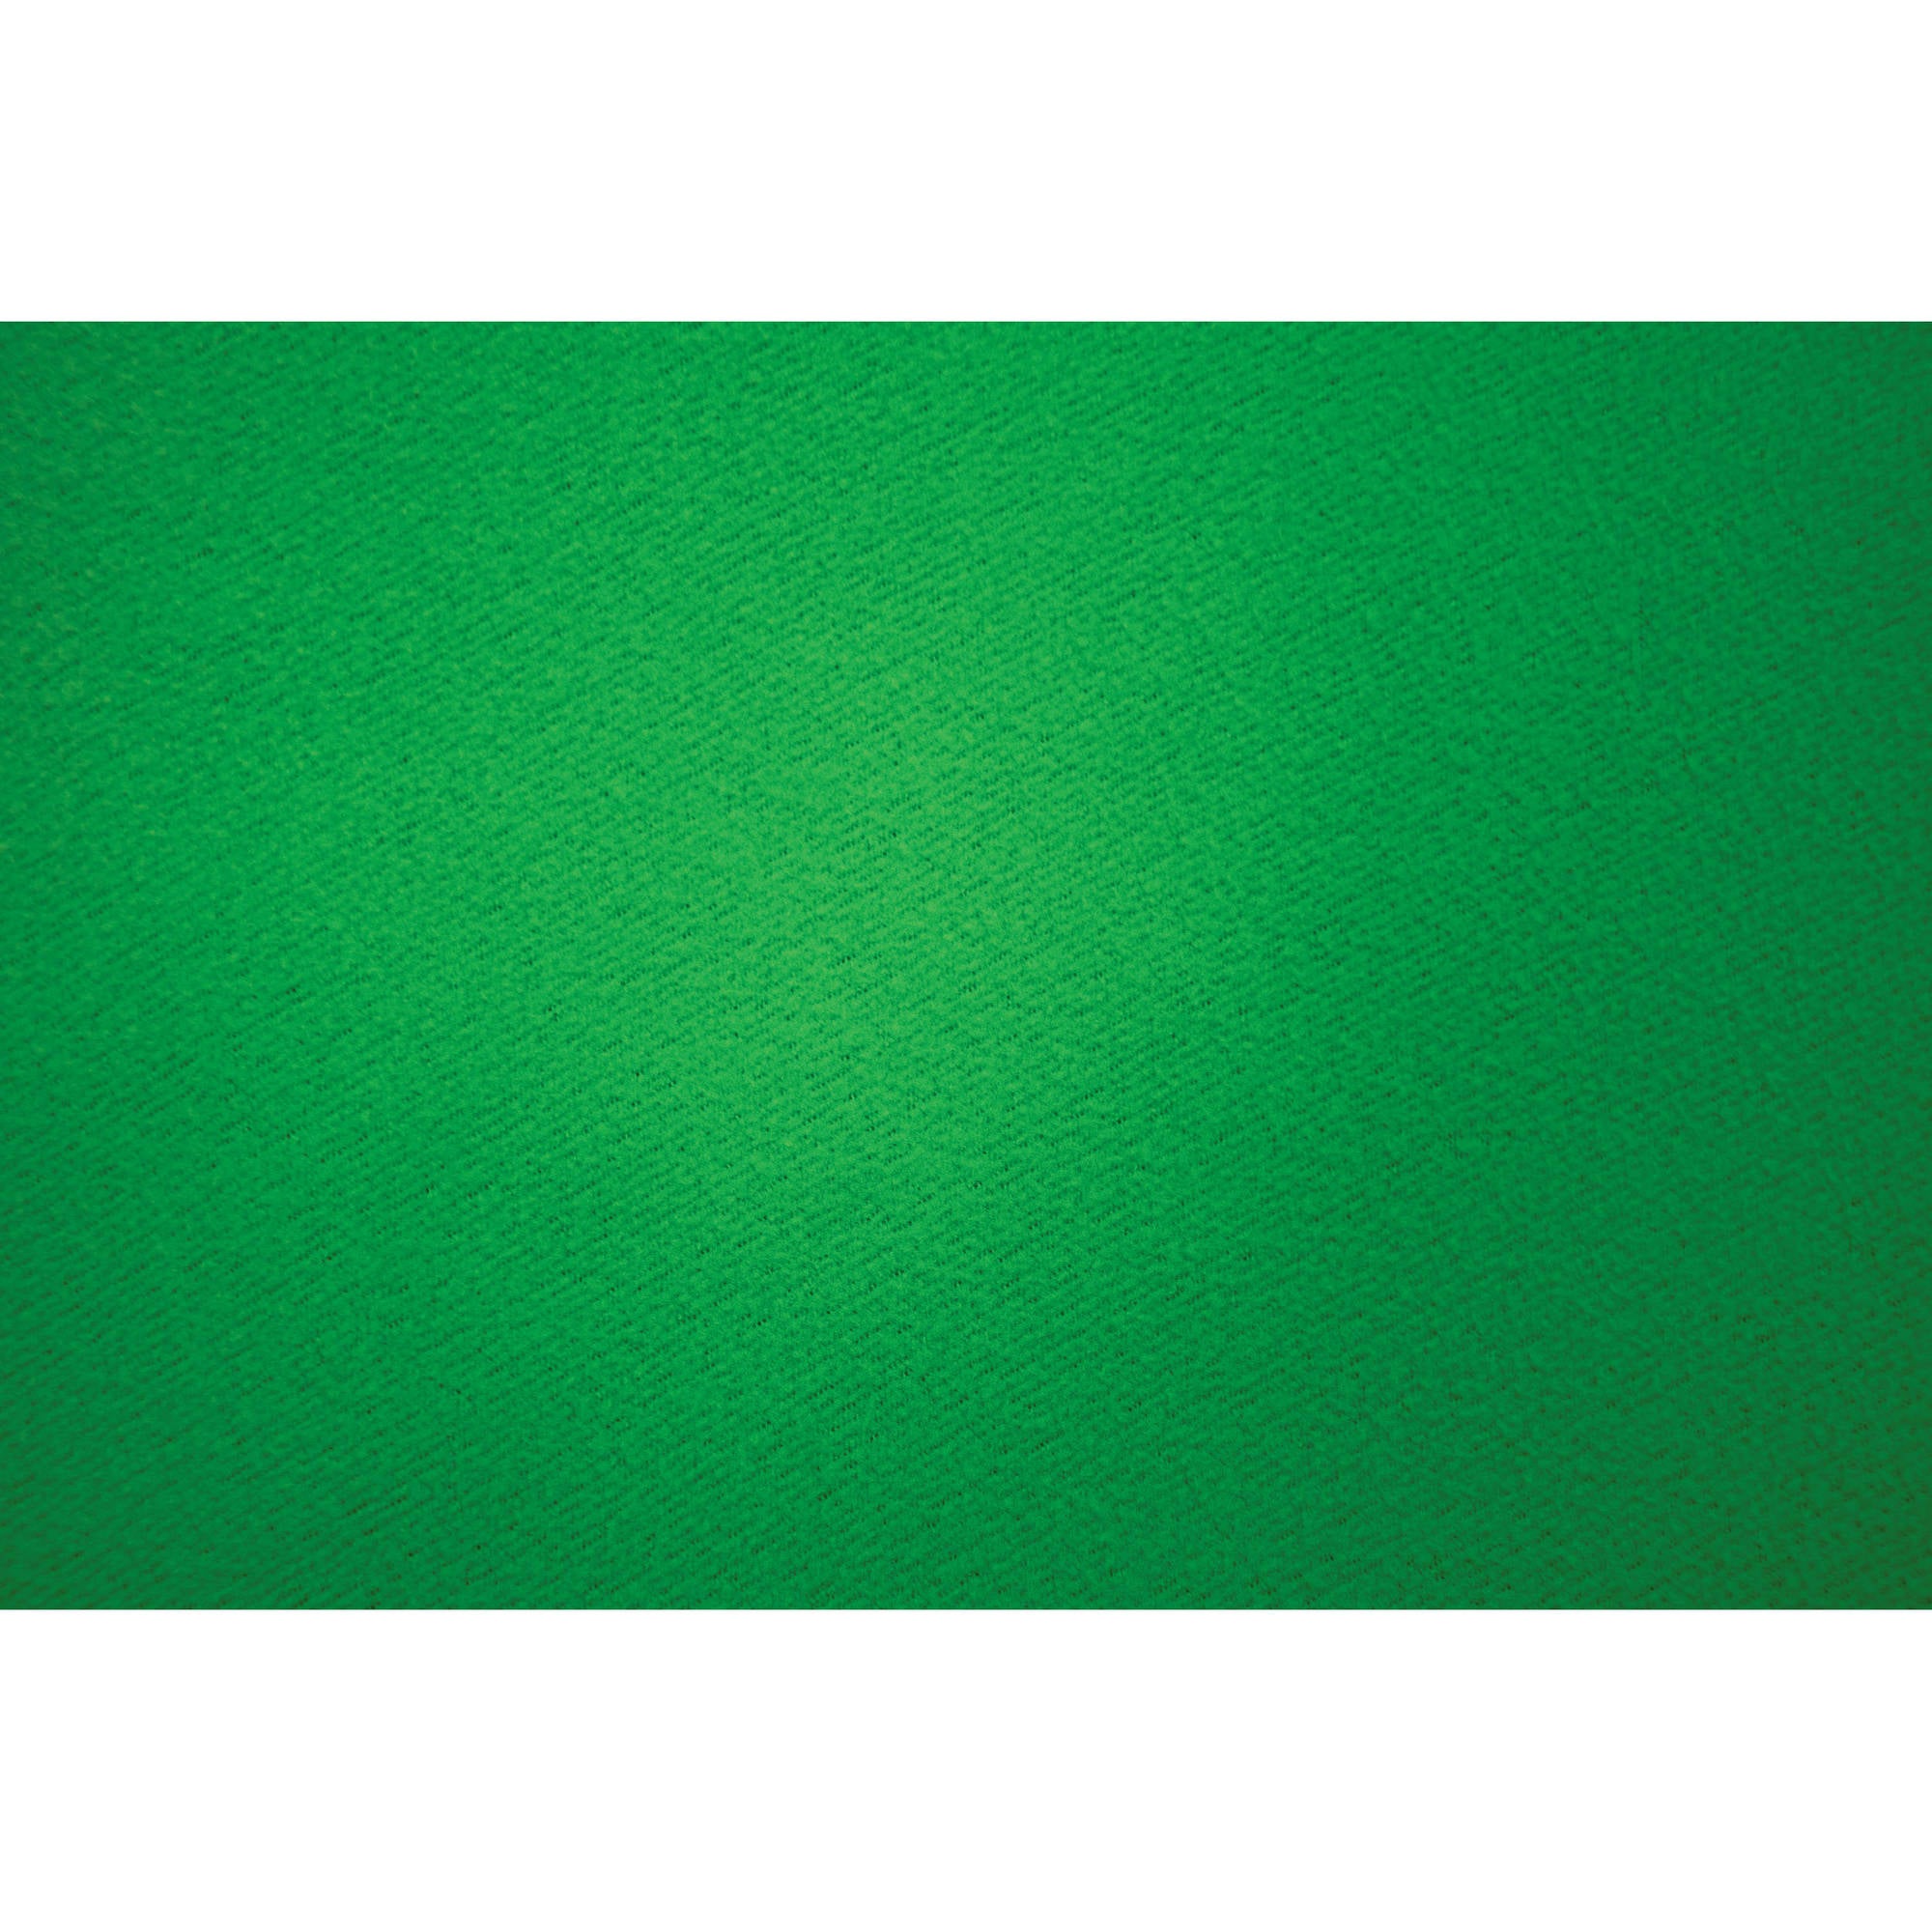 TEART DE RÉSISTANTS DE RILLONNES WESTCOTT - Green à clé chroma (9 'x 20')